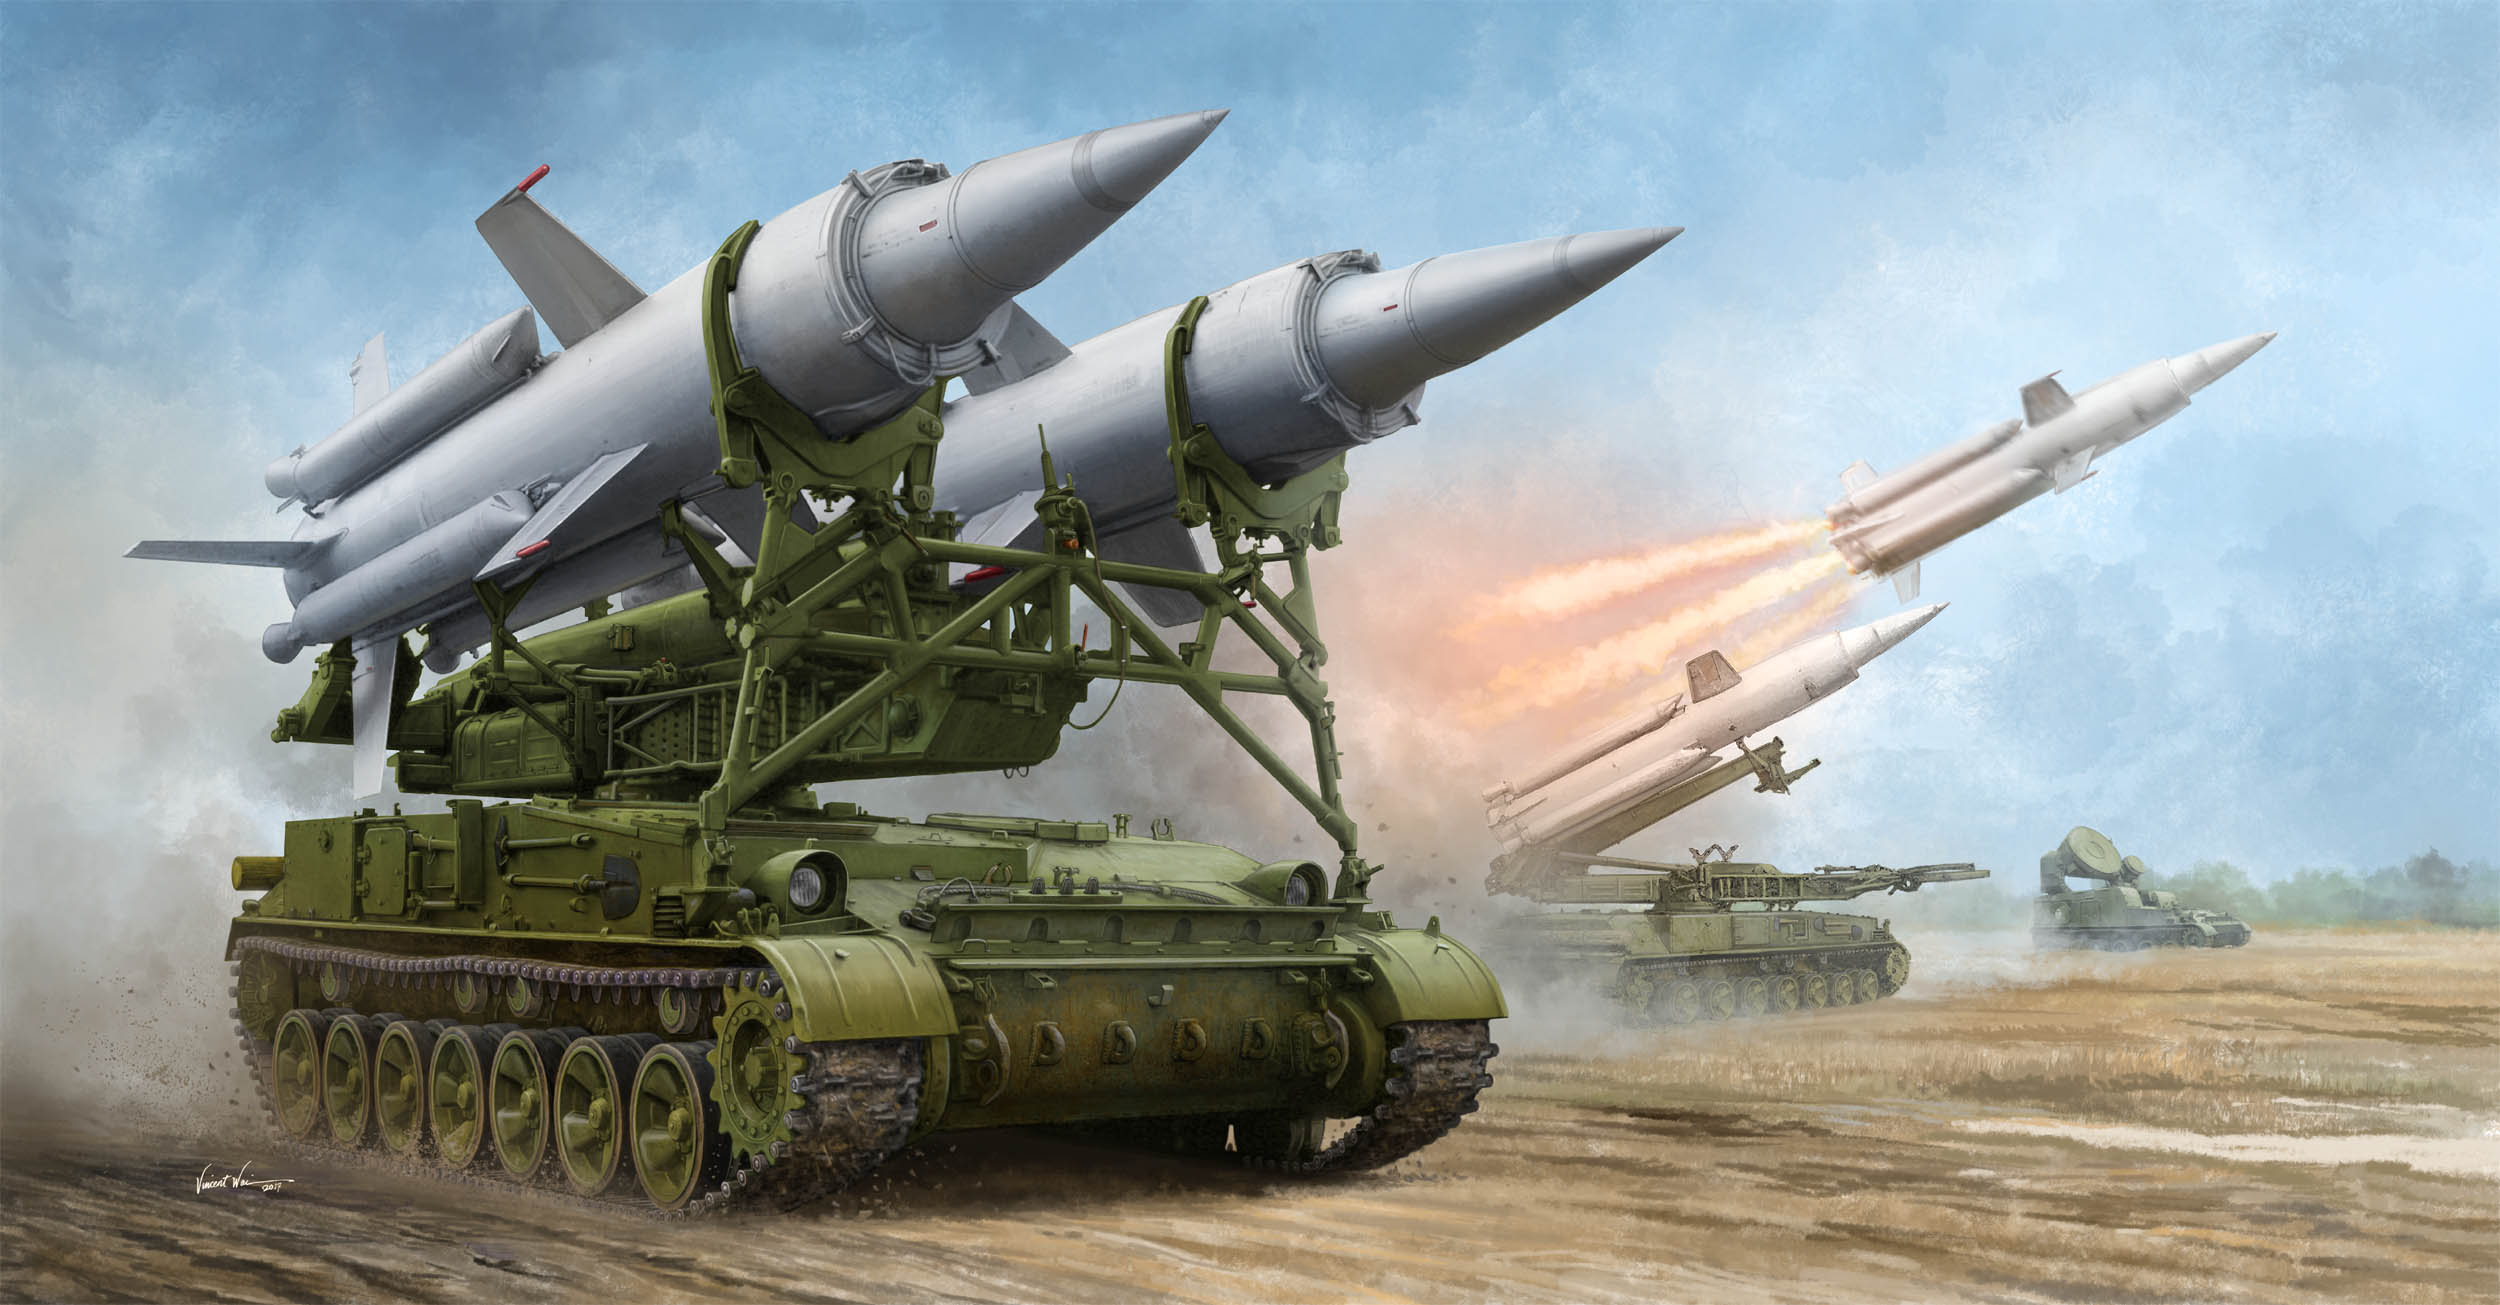 1/35 ソビエト軍 2K11A 対空ミサイルシステム "クルーグ"